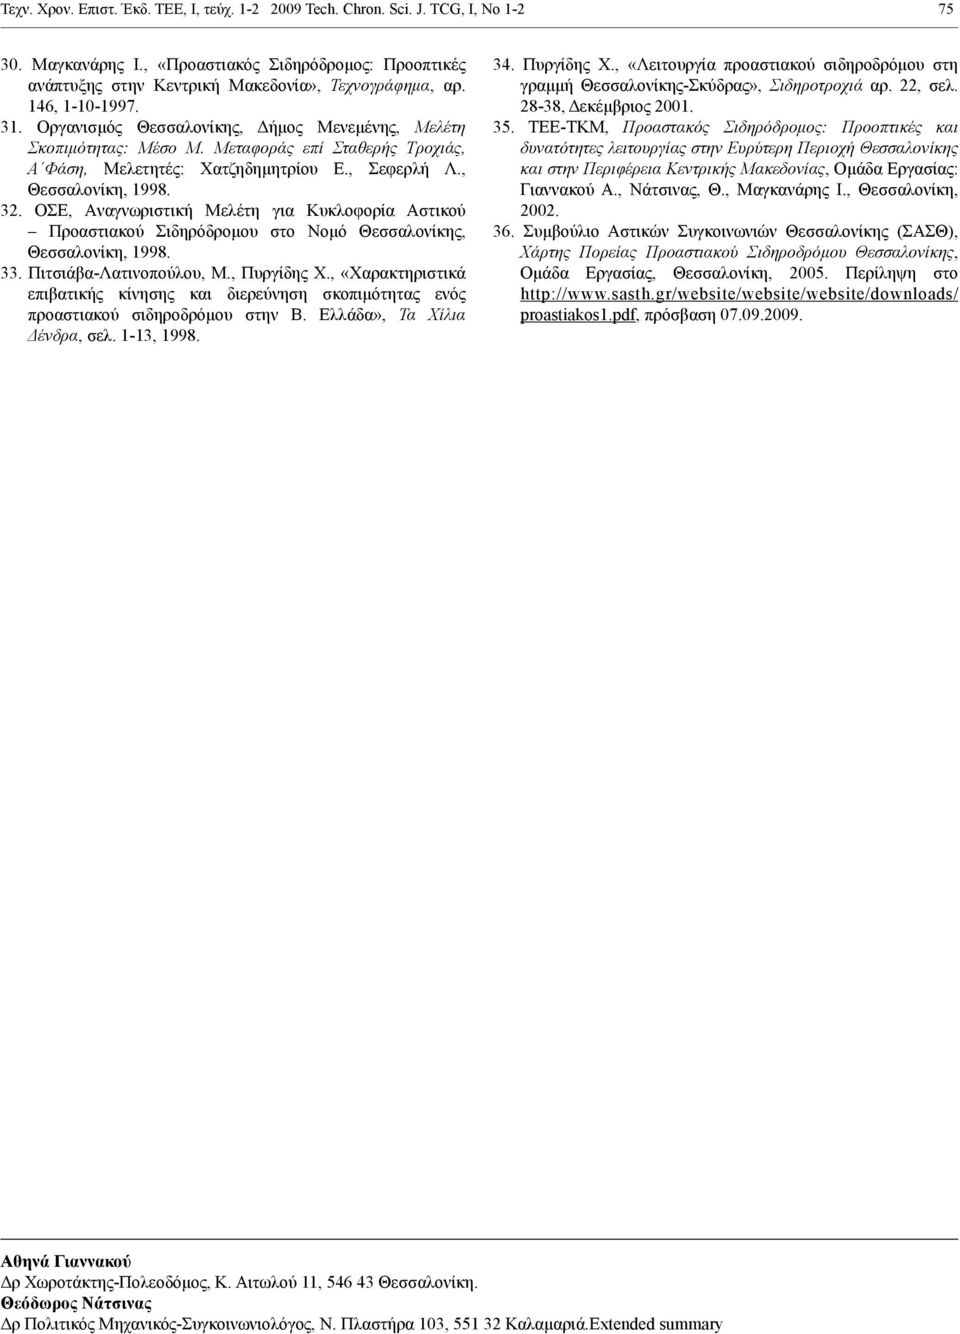 ΟΣΕ, Aναγνωριστική Μελέτη για Κυκλοφορία Αστικού Προαστιακού Σιδηρόδρομου στο Νομό Θεσσαλονίκης, Θεσσαλονίκη, 1998. 33. Πιτσιάβα-Λατινοπούλου, Μ., Πυργίδης Χ.